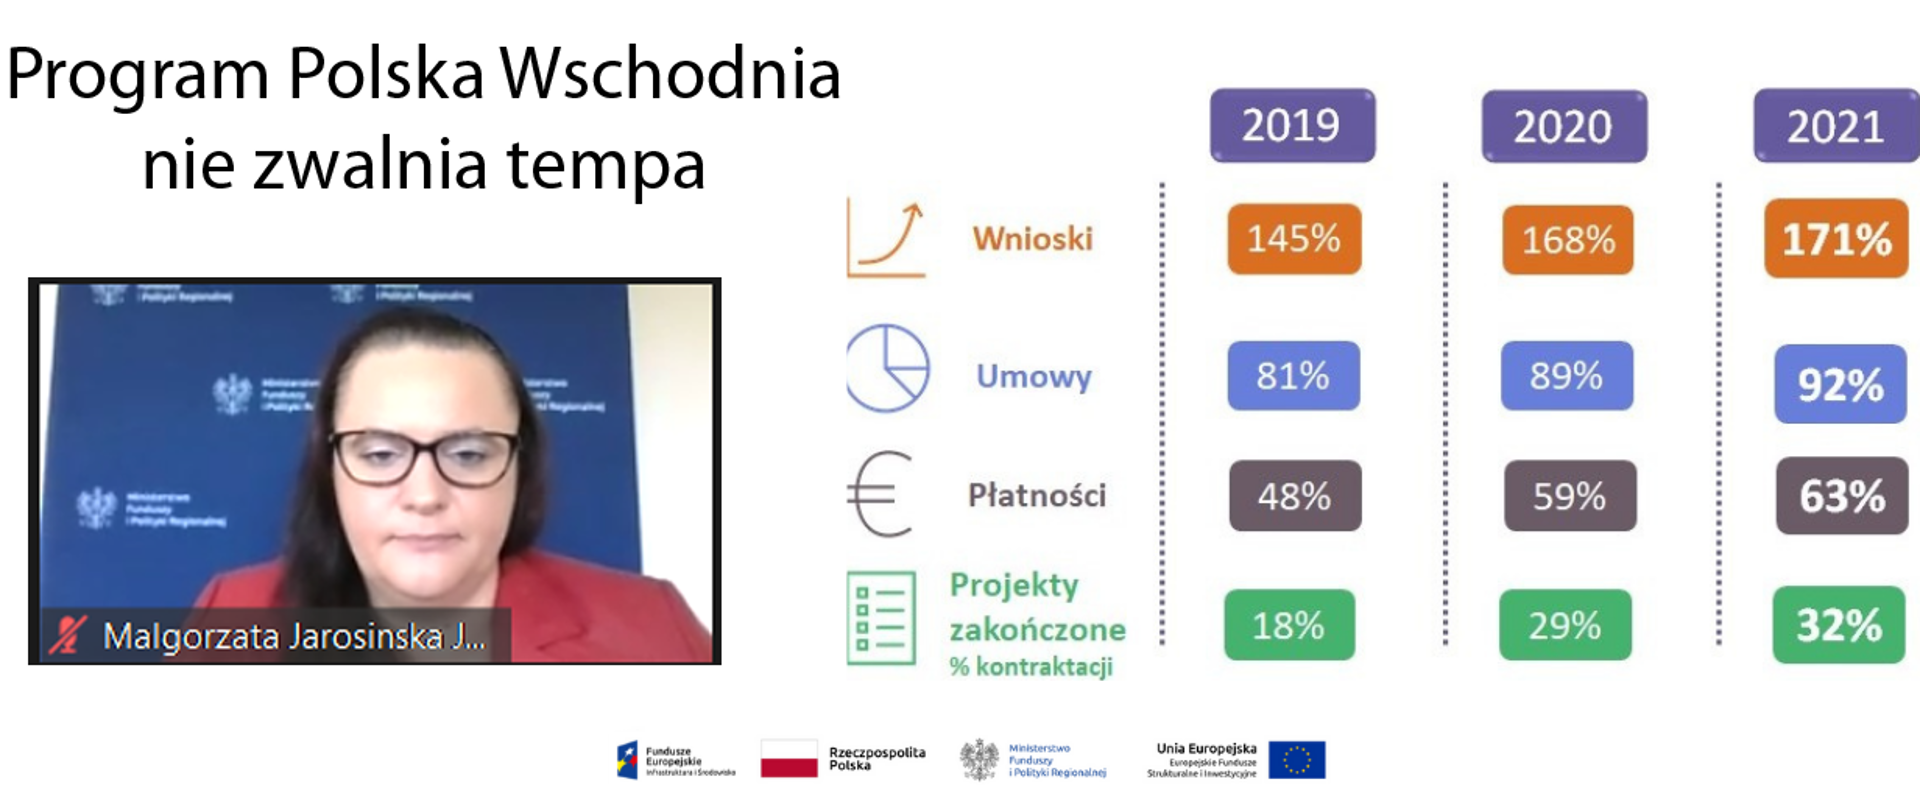 Na grafice u góry napis: Program Polska Wschodnia nie zwalnia tempa. Poniżej zdjęcie wiceminister Małgorzaty Jarosińskiej-Jedynak. Po prawej wyniki programu za lata 2019, 2020 i 2021 w procentach.